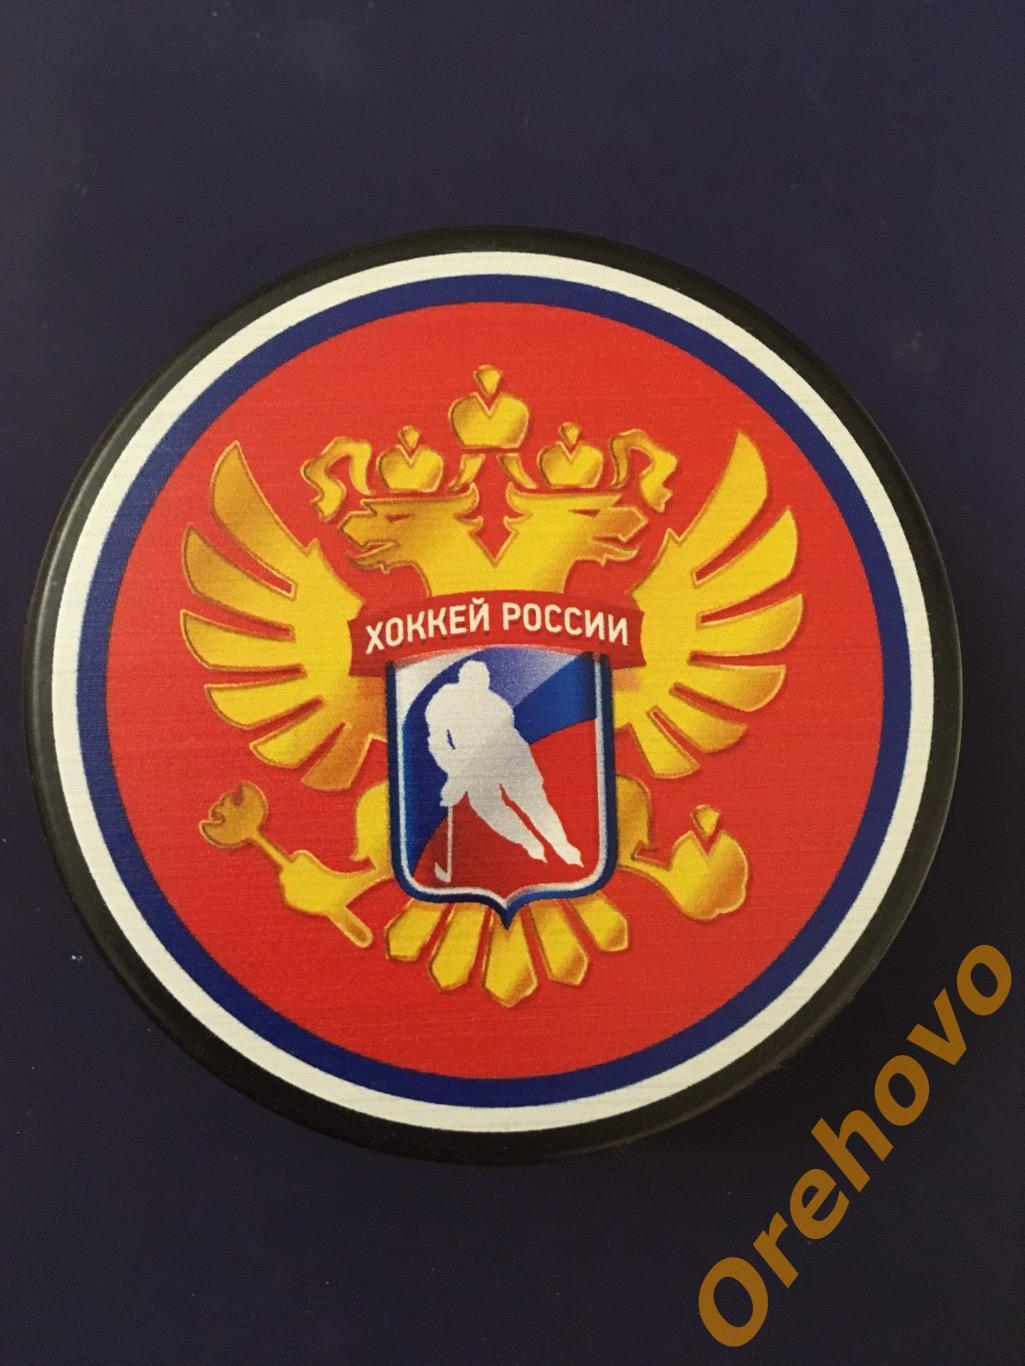 Шайба Хоккей России (сувенир)